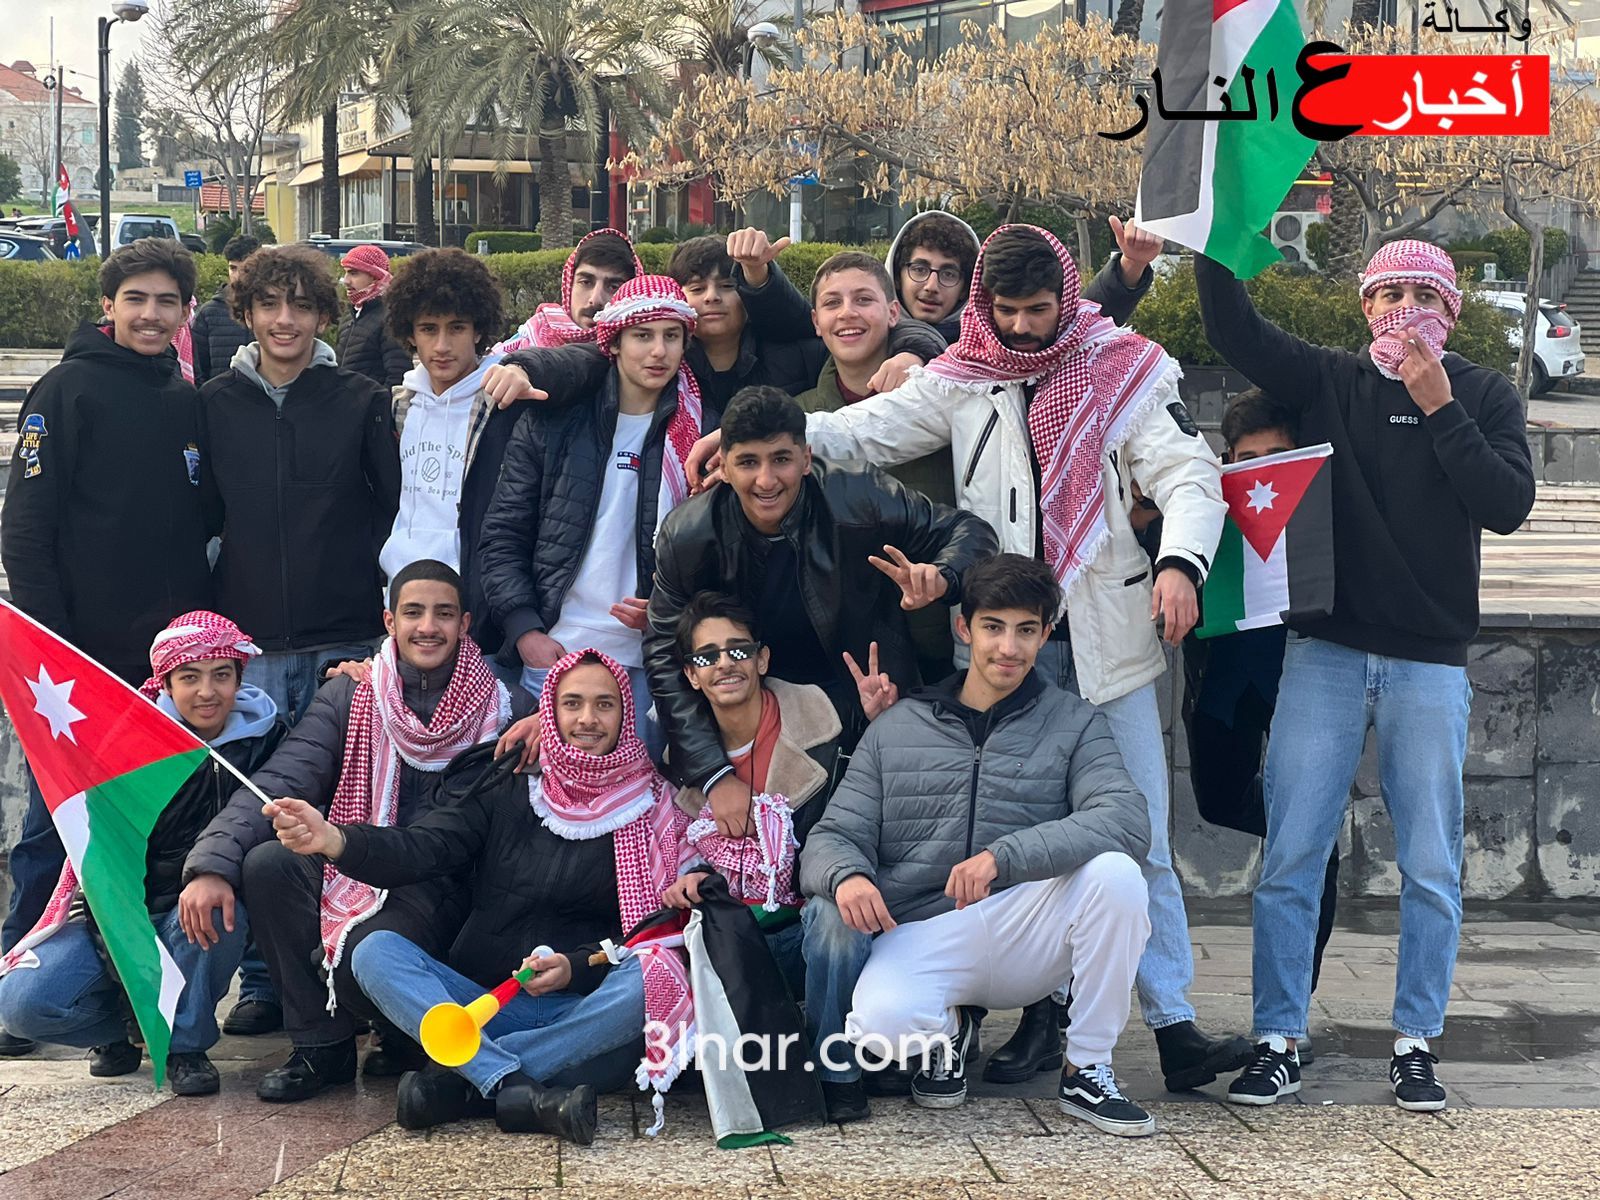 بالصور – احتفالات الأردنيين بفوز النشامى وتأهلهم الى نصف نهائي كأس آسيا